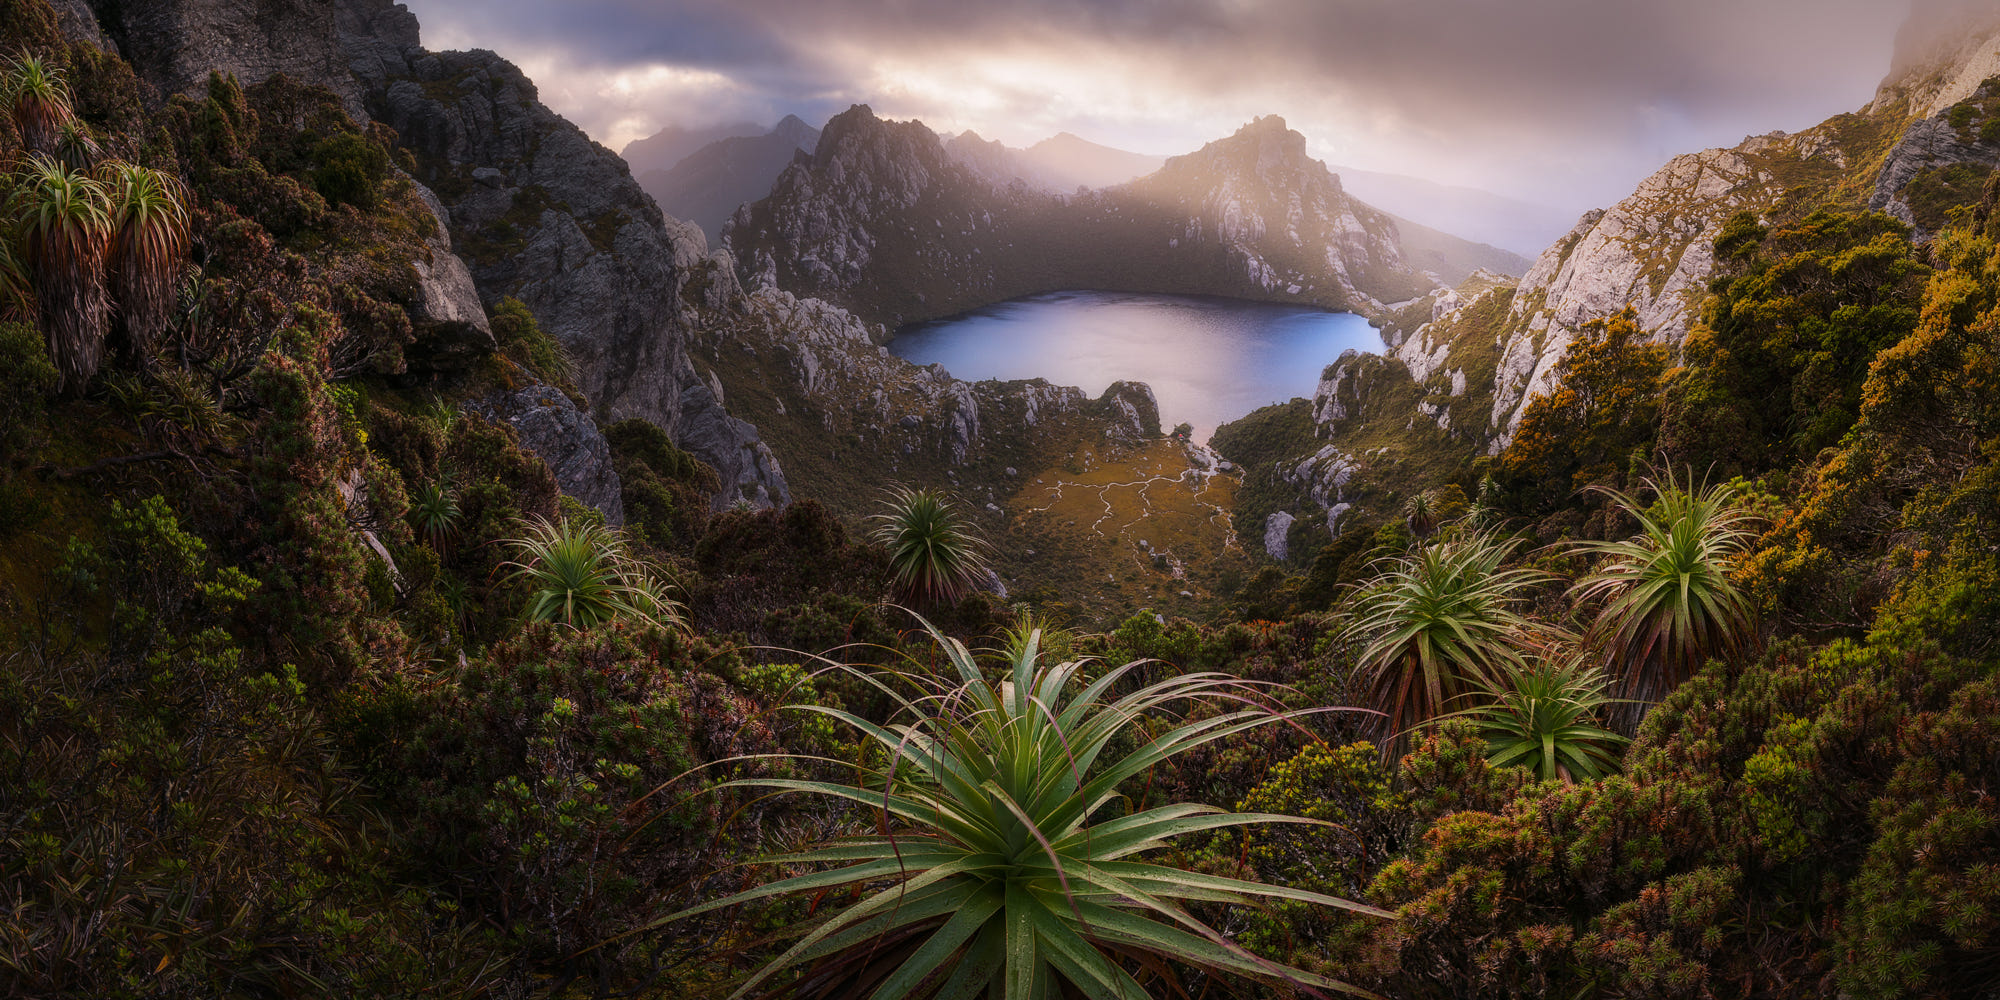 500px Nature Garden Australia Tasmania Landscape Mountains Southwest National Park Plants 2000x1000